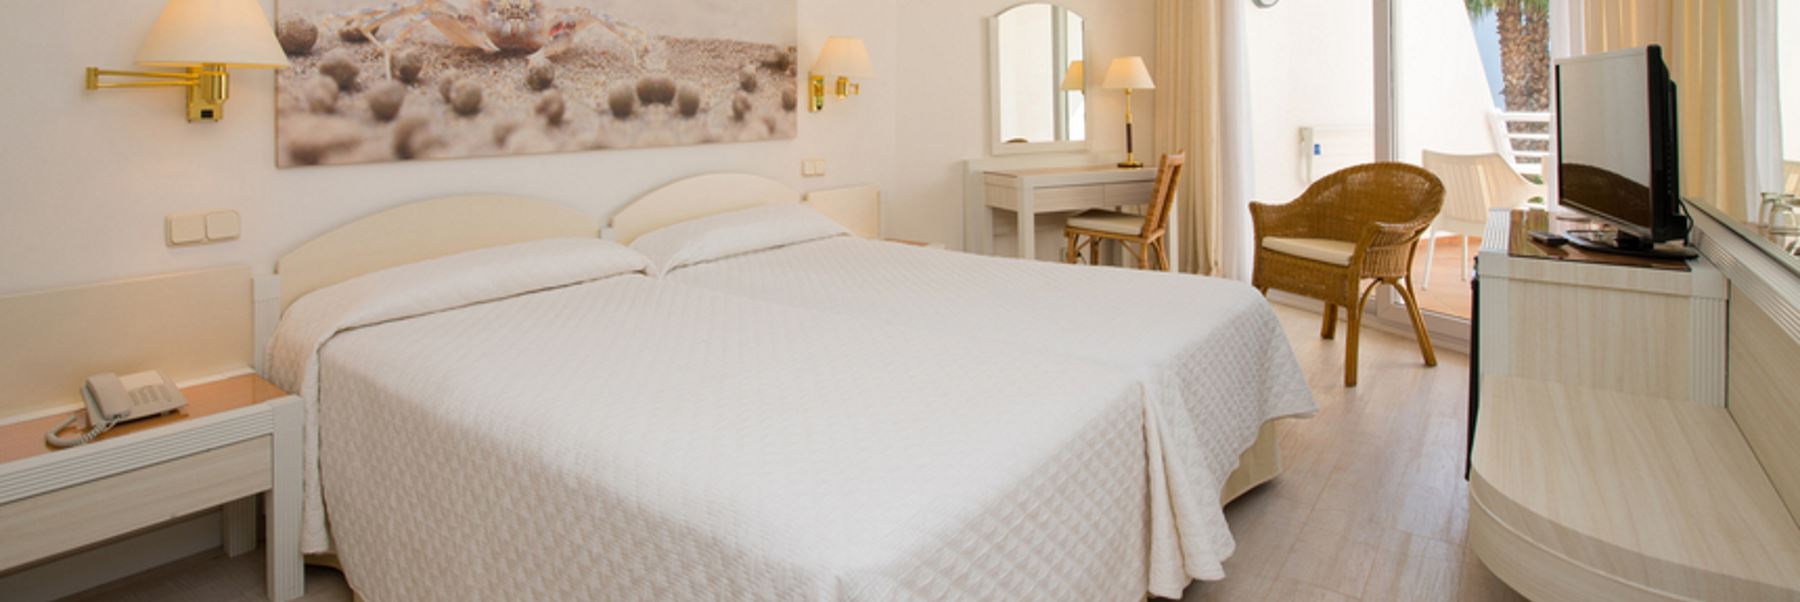 Oferta Hotel Iberostar Royal Andalus en todo incluido. Uno de los mejores hoteles de Andalucía